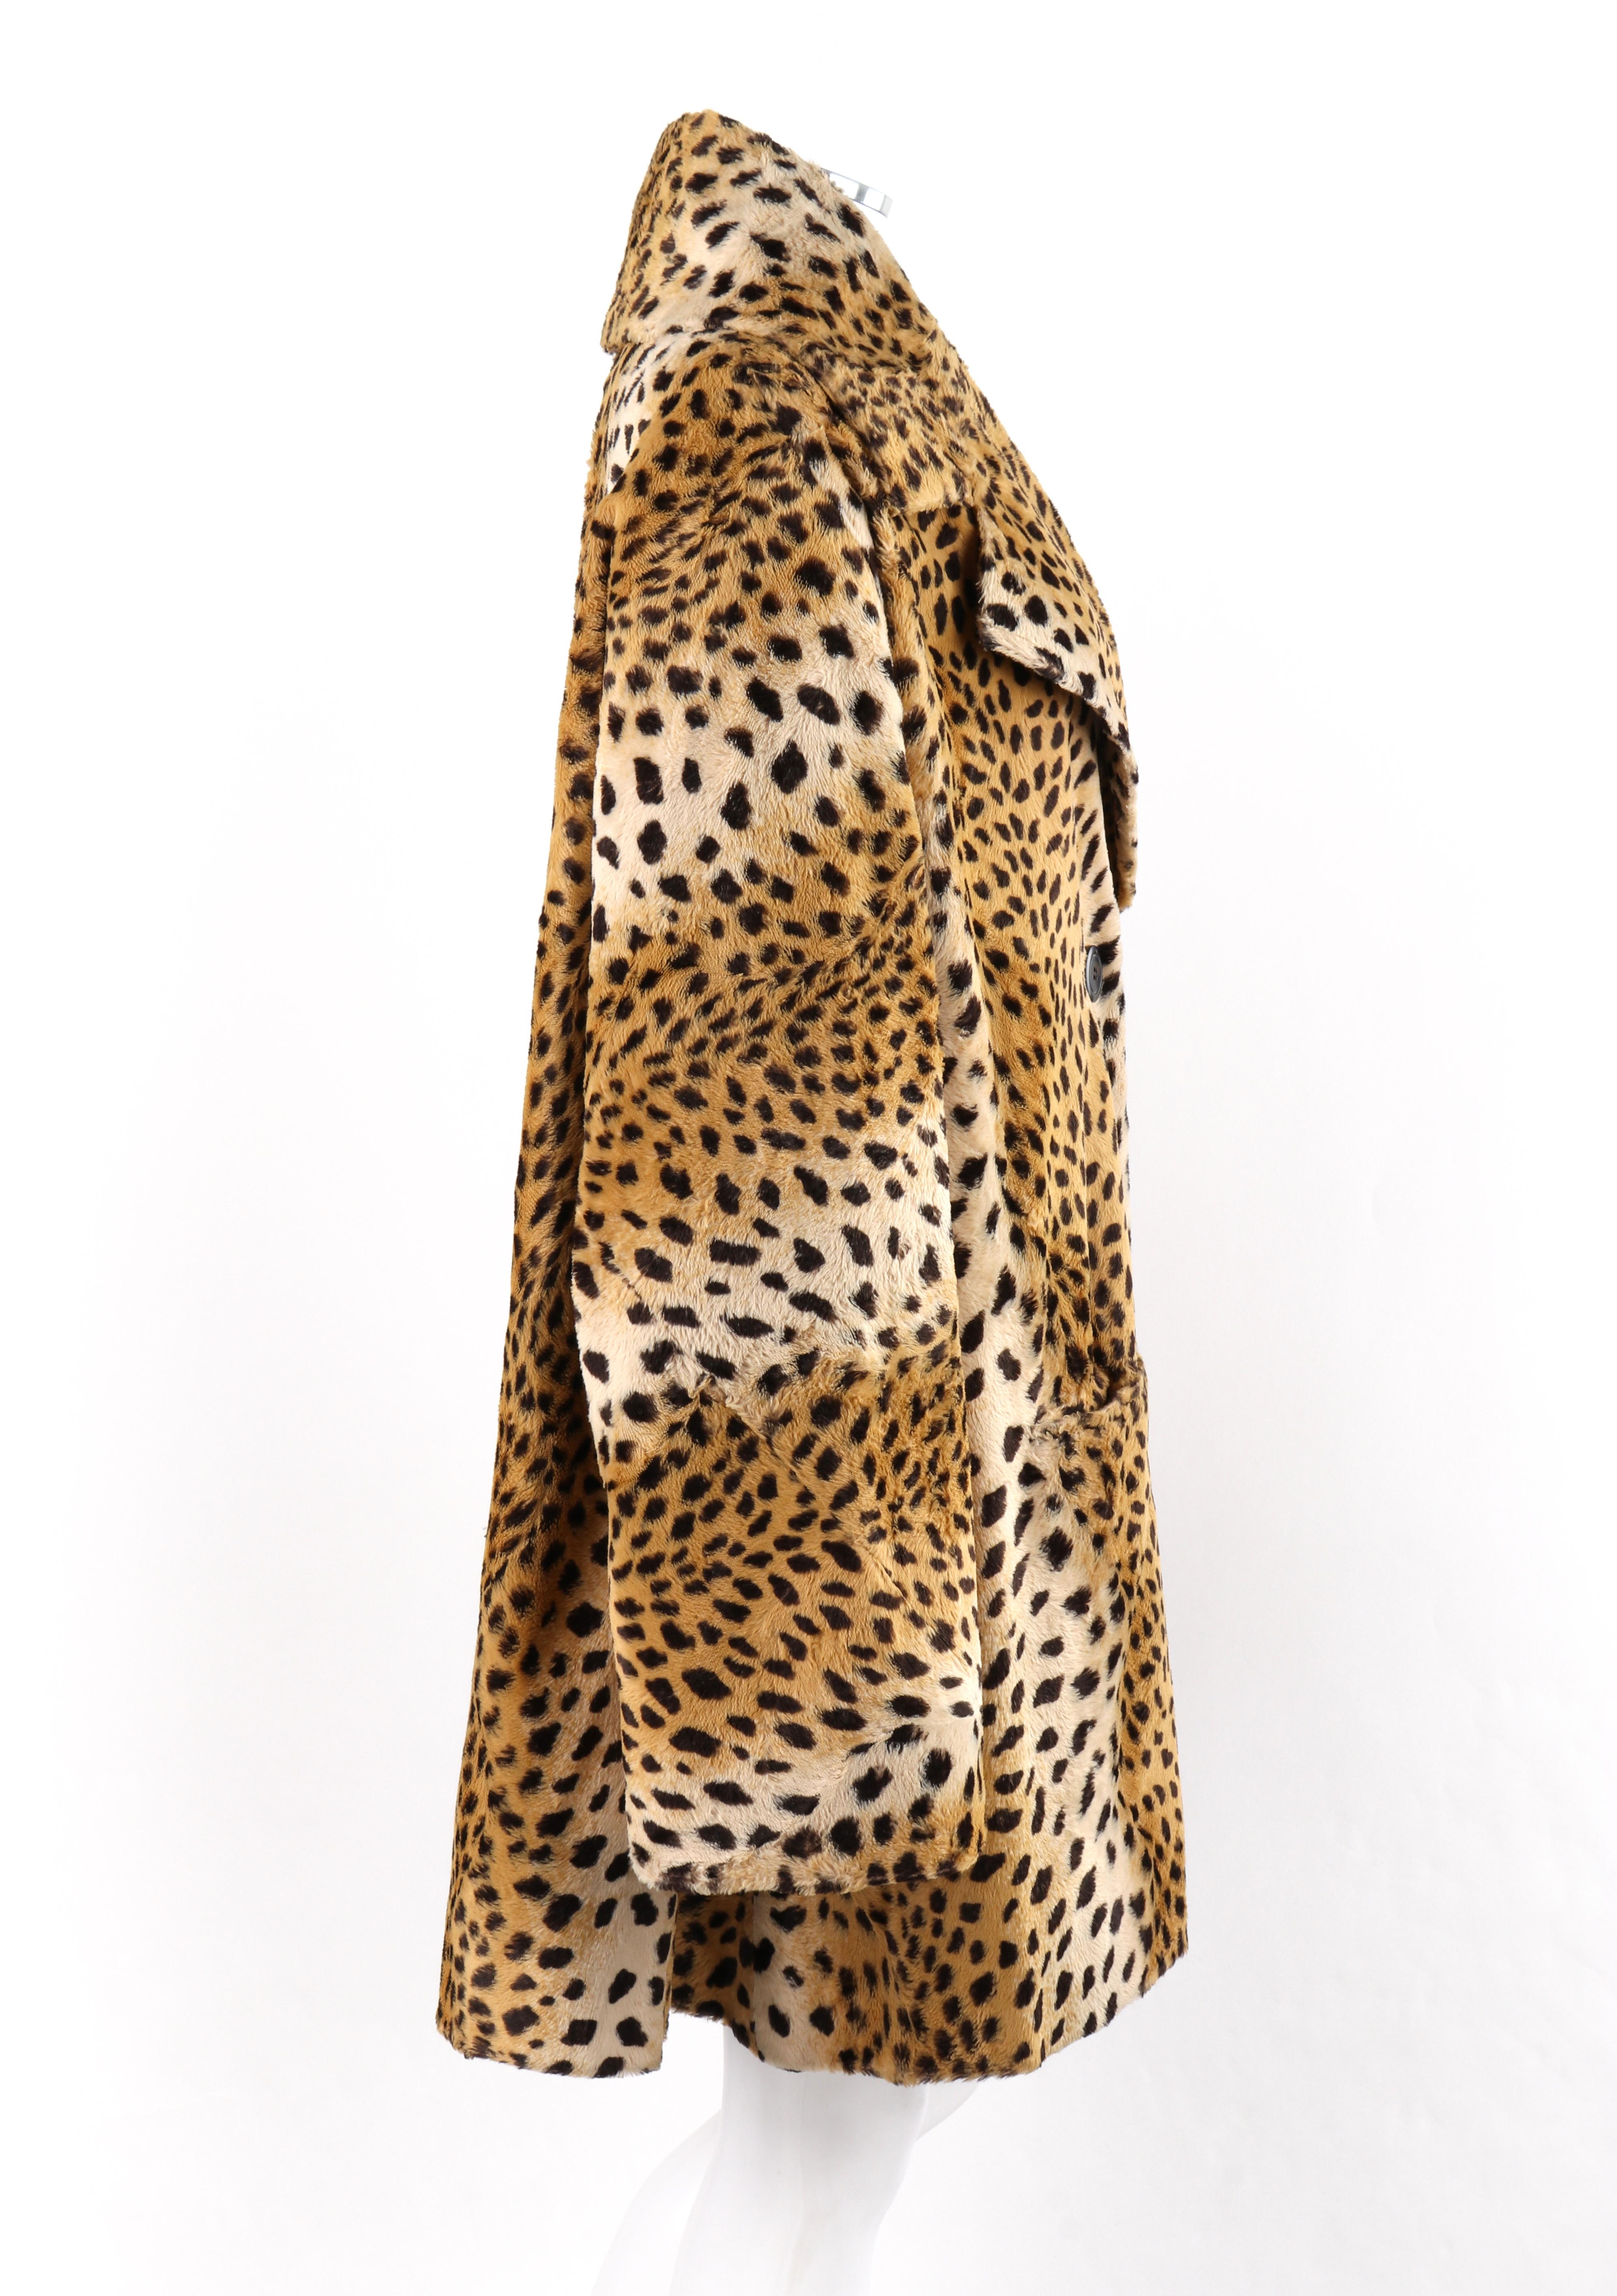 GIVENCHY COUTURE A/W 1997 ALEXANDER McQUEEN Cheetah Print Faux Fur ...